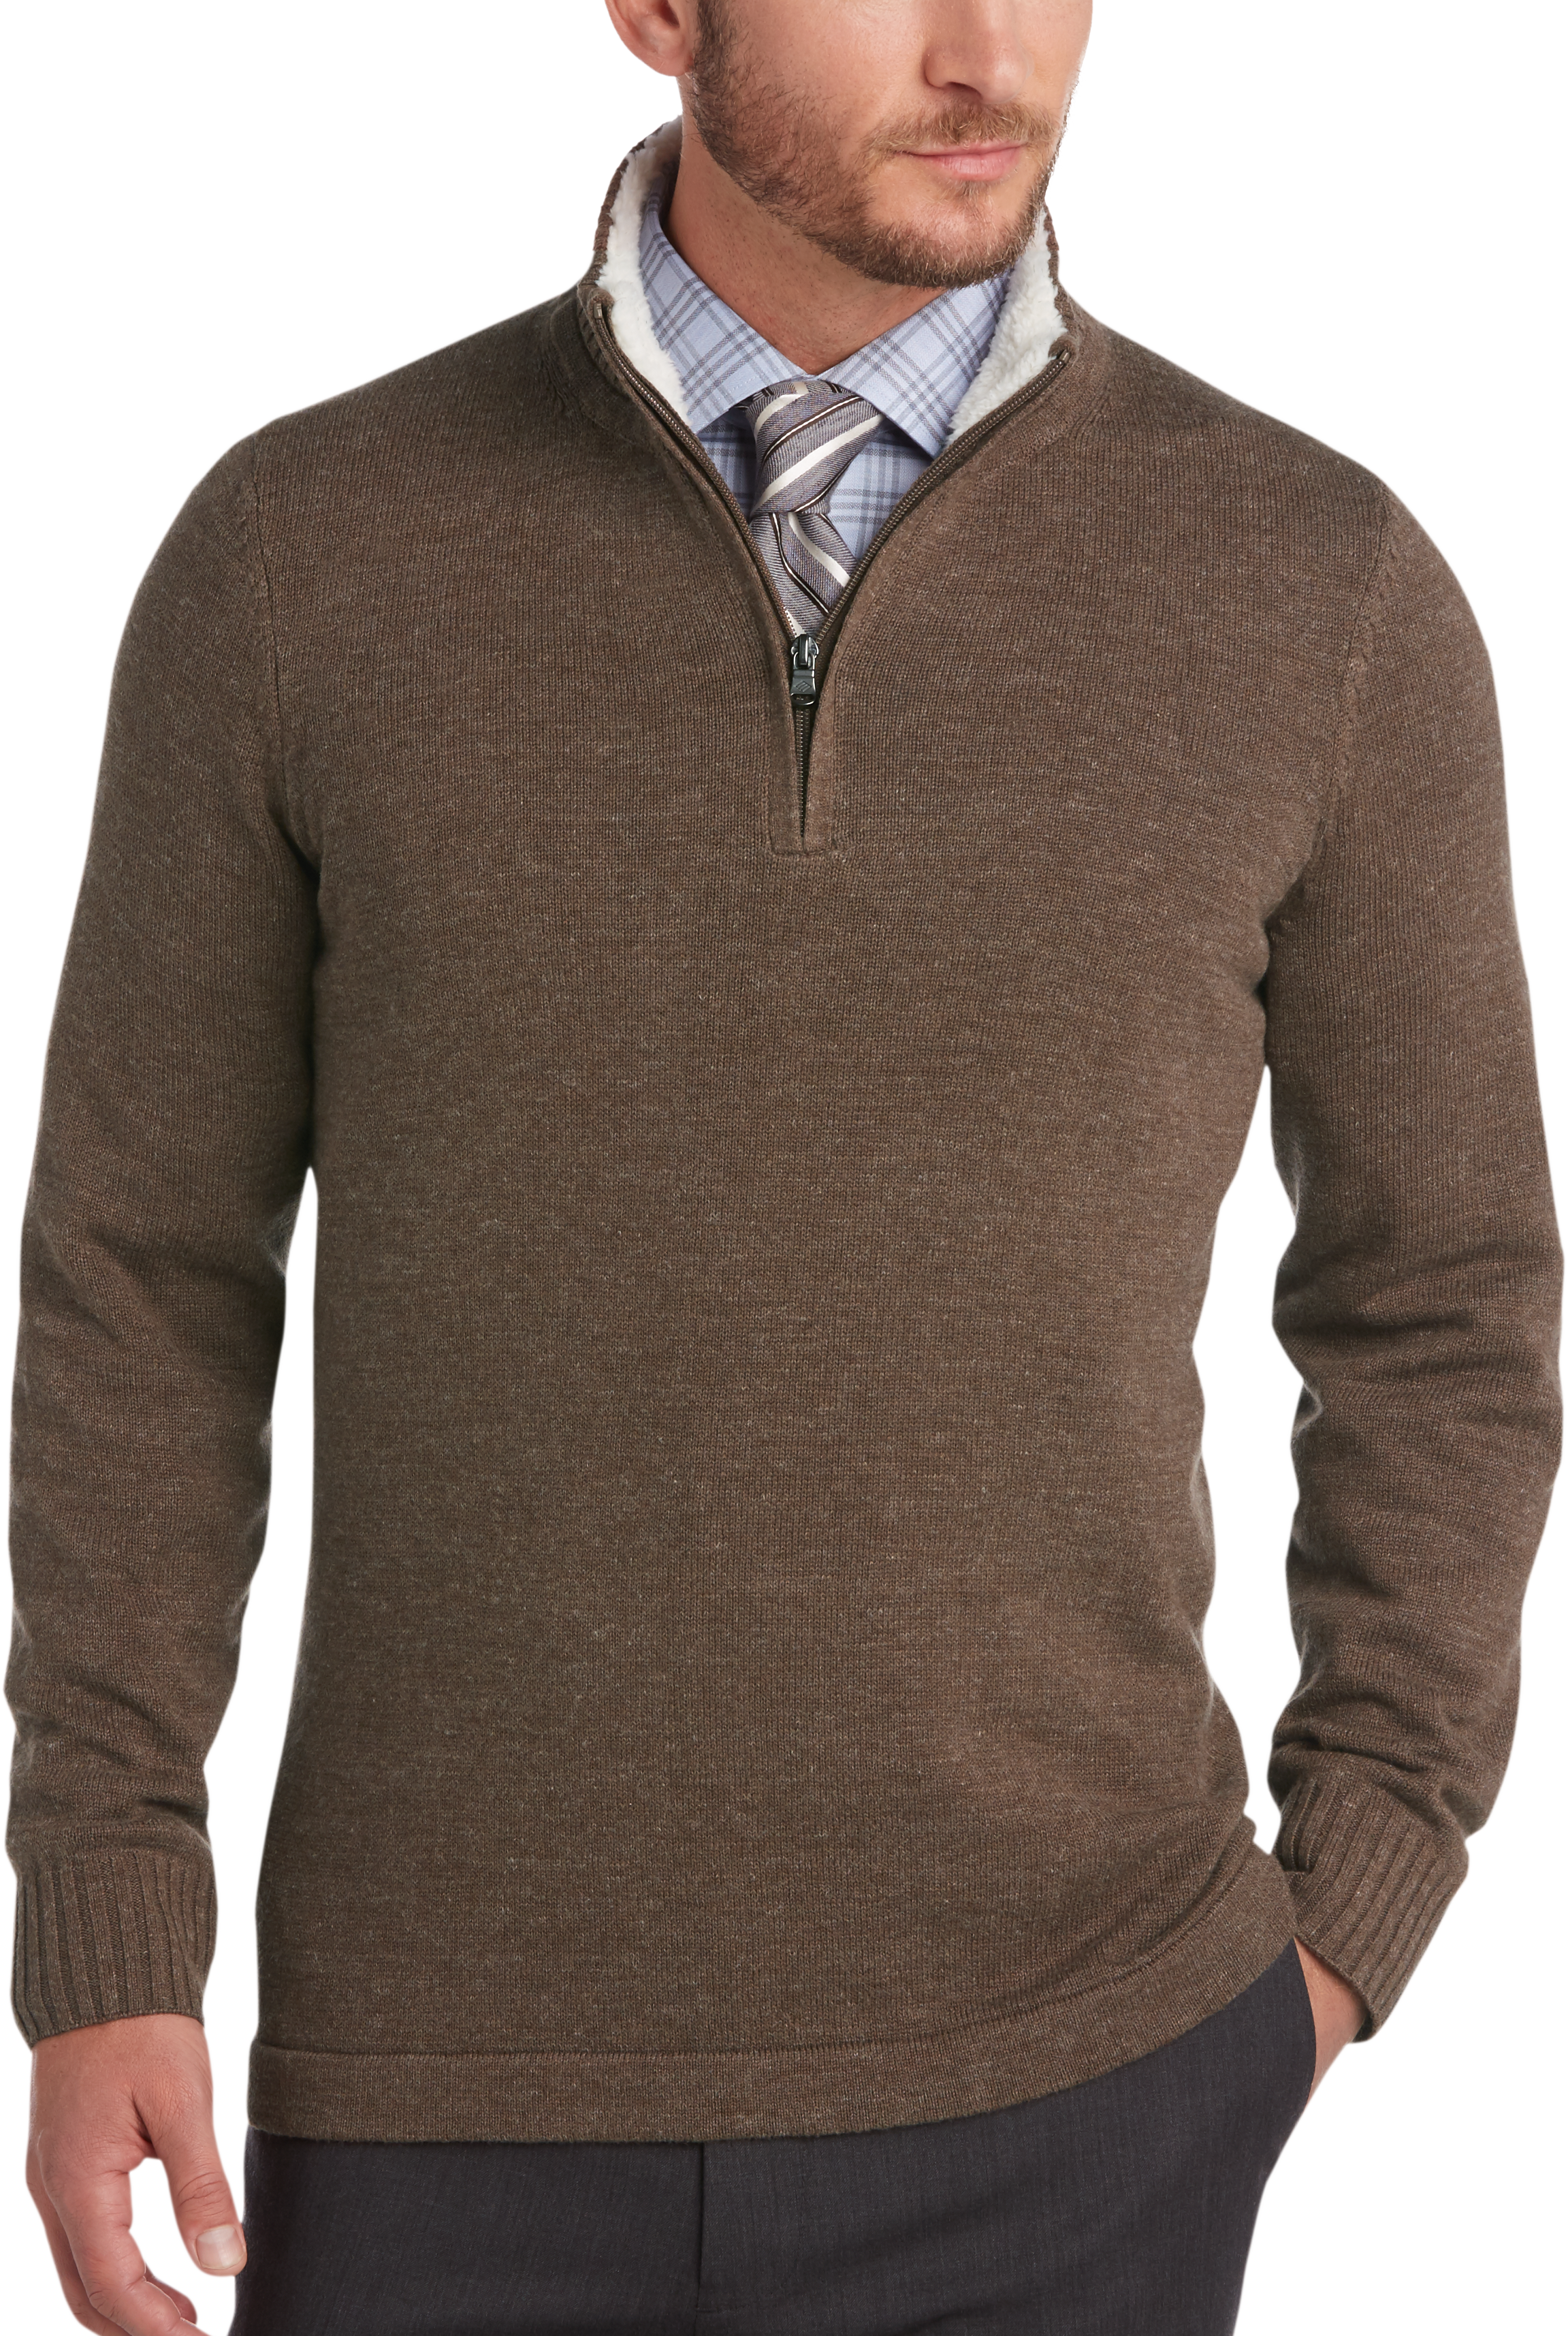 Joseph Abboud Brown Half-Zip Sweater - Men's | Men's Wearhouse